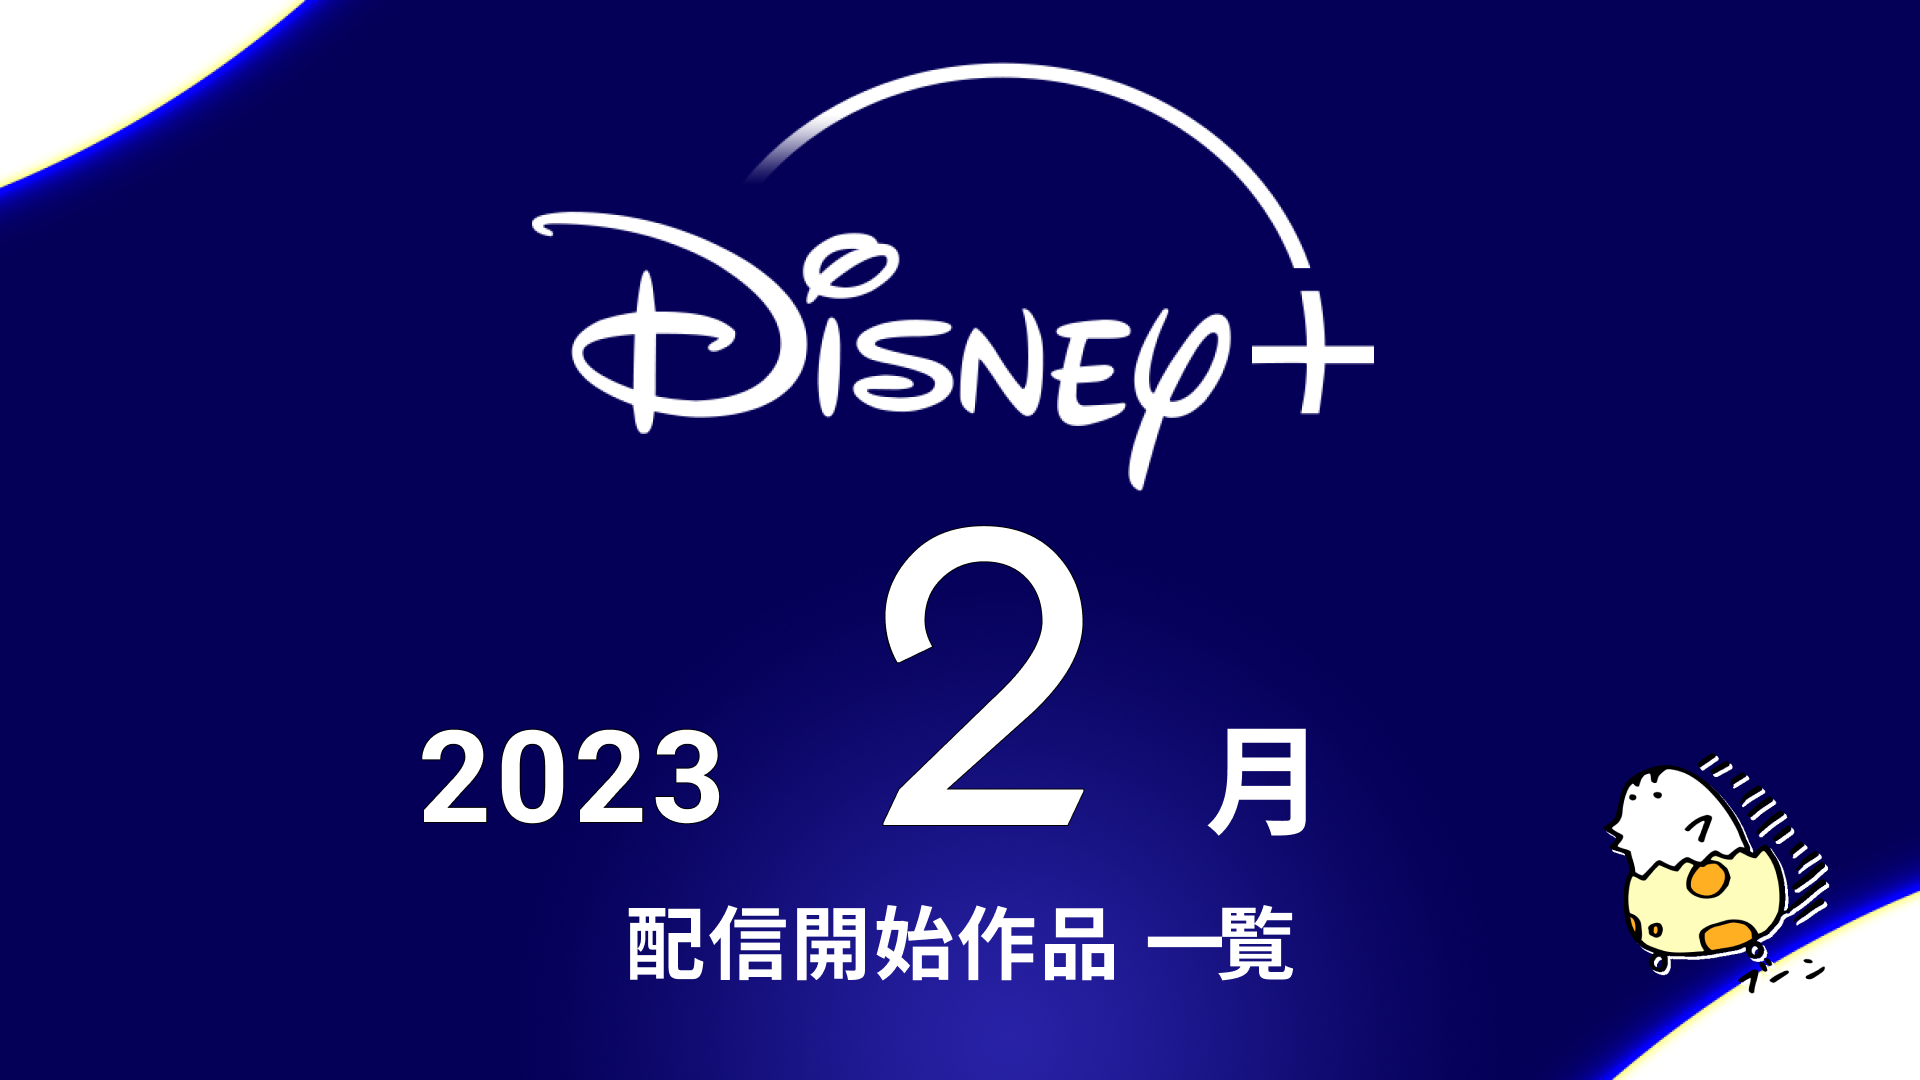 Disney+(ディズニープラス) 2023年2月配信作品一覧 『ブラックパンサー／ワカンダ・フォーエバー』『ゴースト・ライダー』『くまのプーさん いつまでも友達』